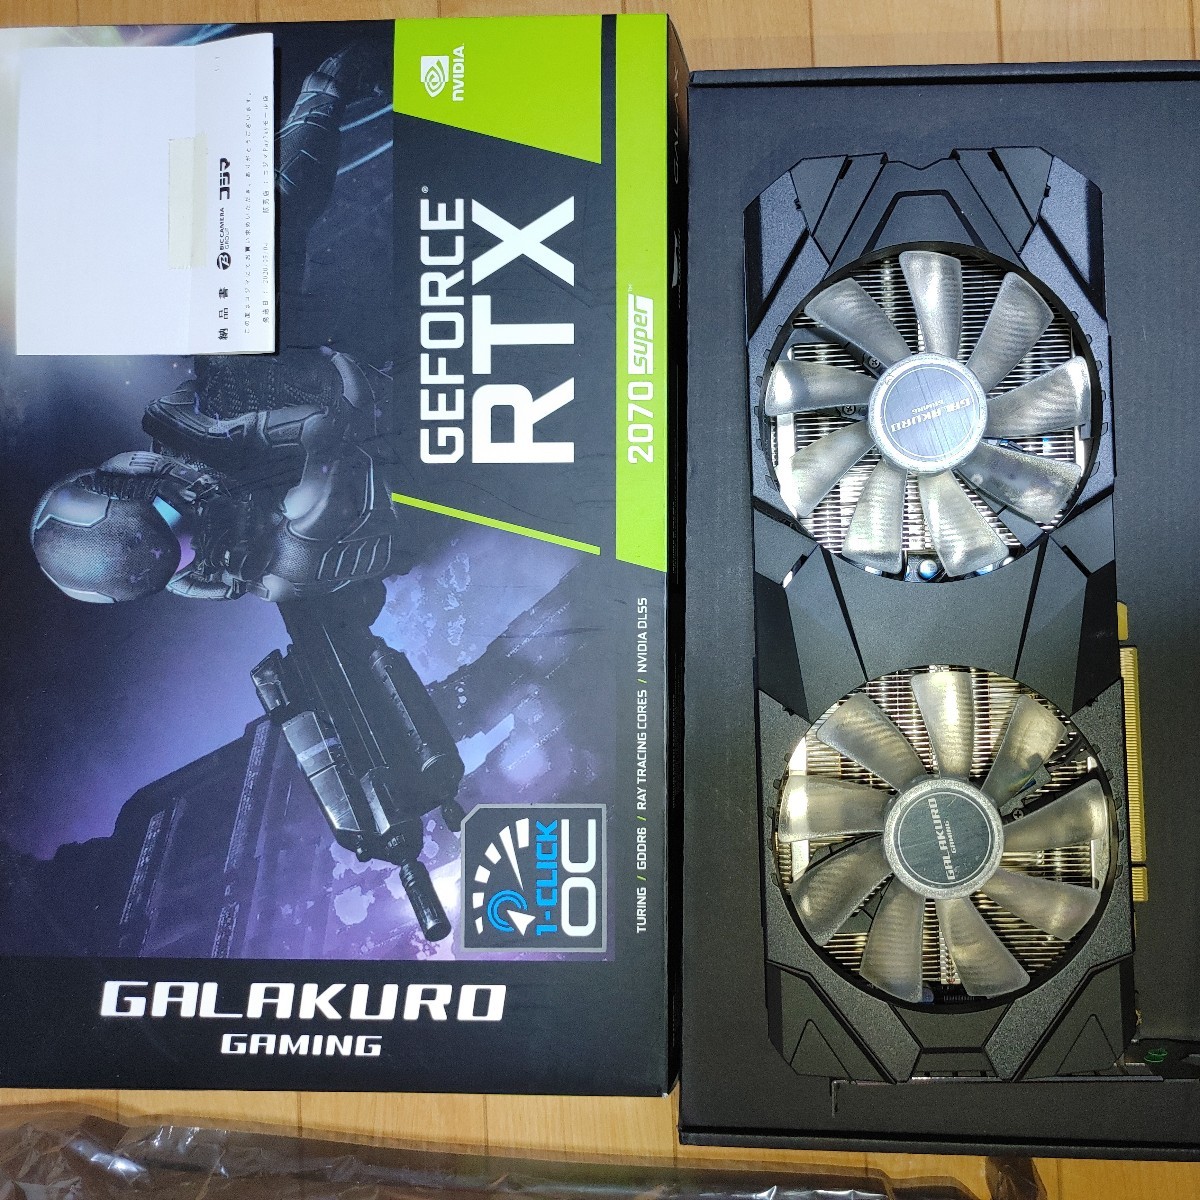 【最新入荷】 RTX 2070 super GeForce GTX NVIDIA グラフィックボード GALAKURO GAMING グラボ PCI Express